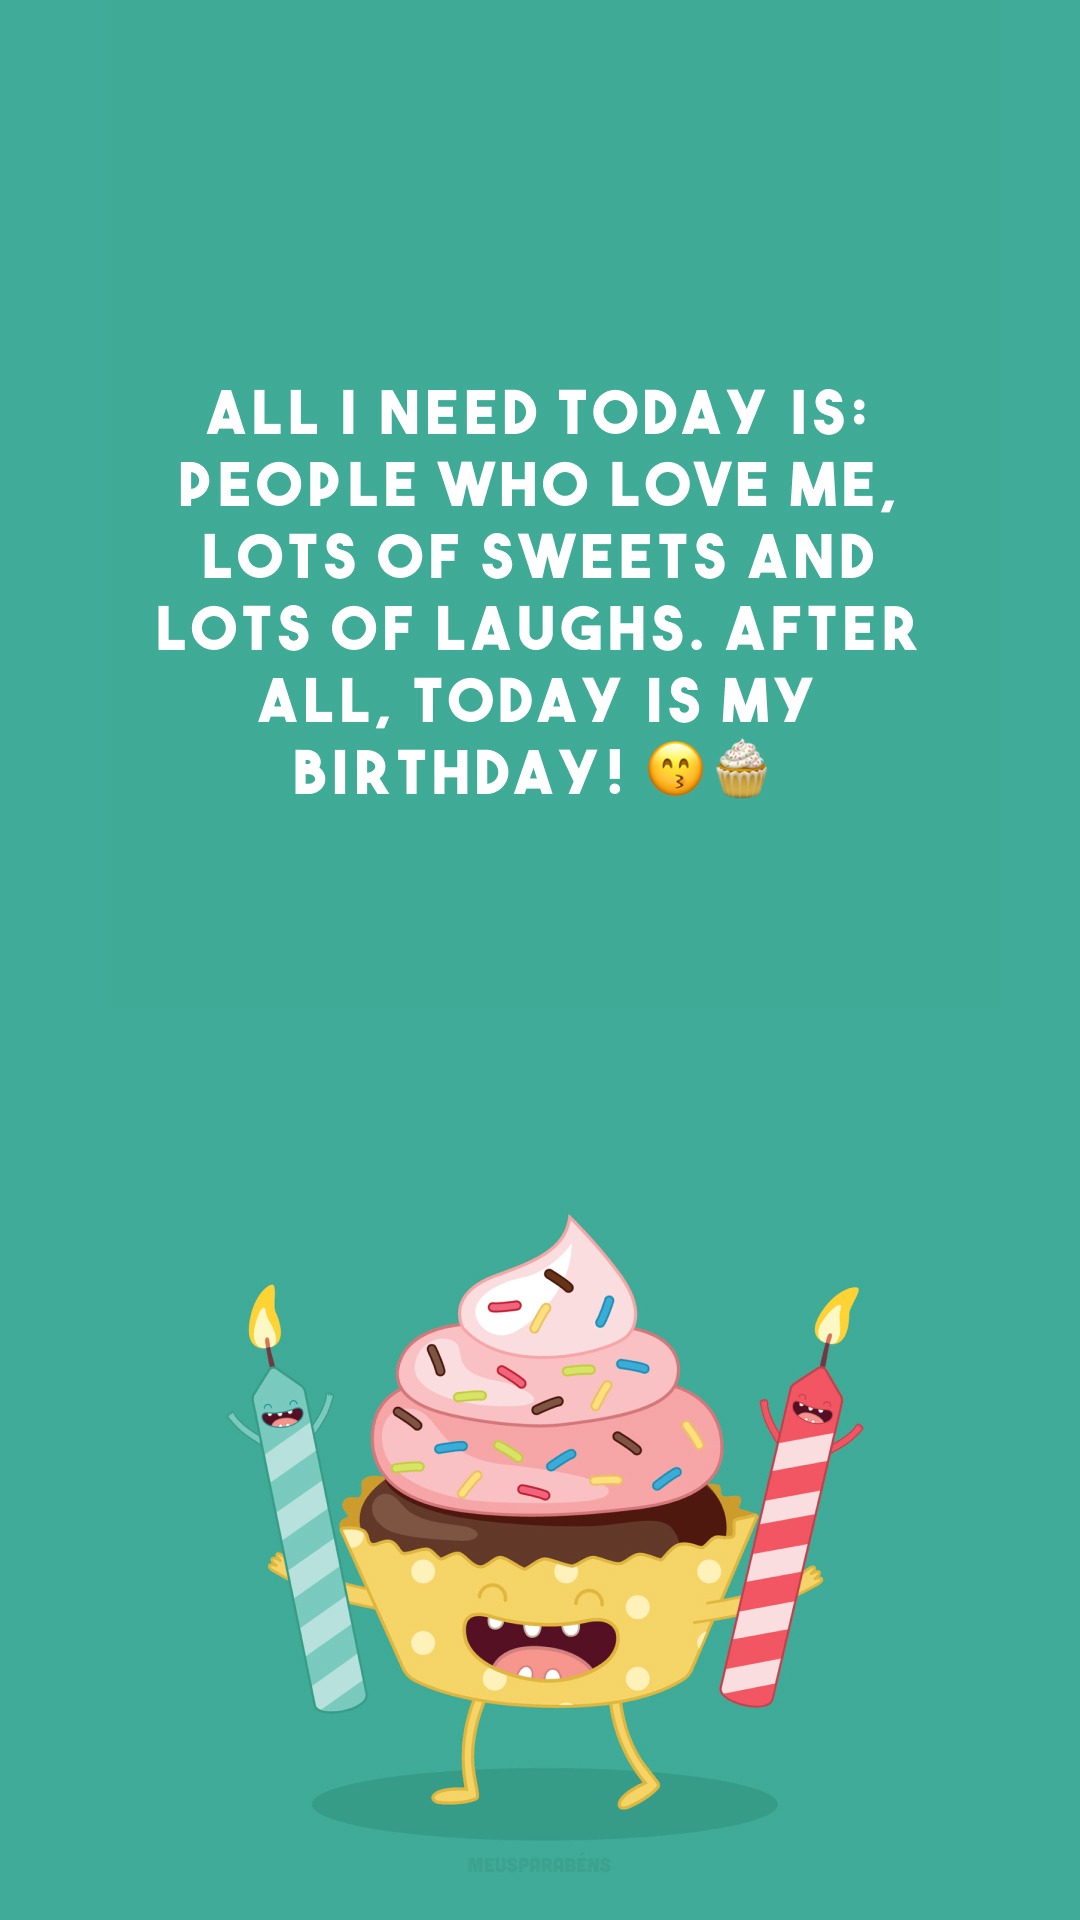 All I need today is: people who love me, lots of sweets and lots of laughs. After all, today is my birthday! 😙🧁

<p>(Tudo o que eu preciso hoje é: pessoas que me amam, muitos doces e muitas risadas. Afinal, hoje é meu aniversário!)<p>